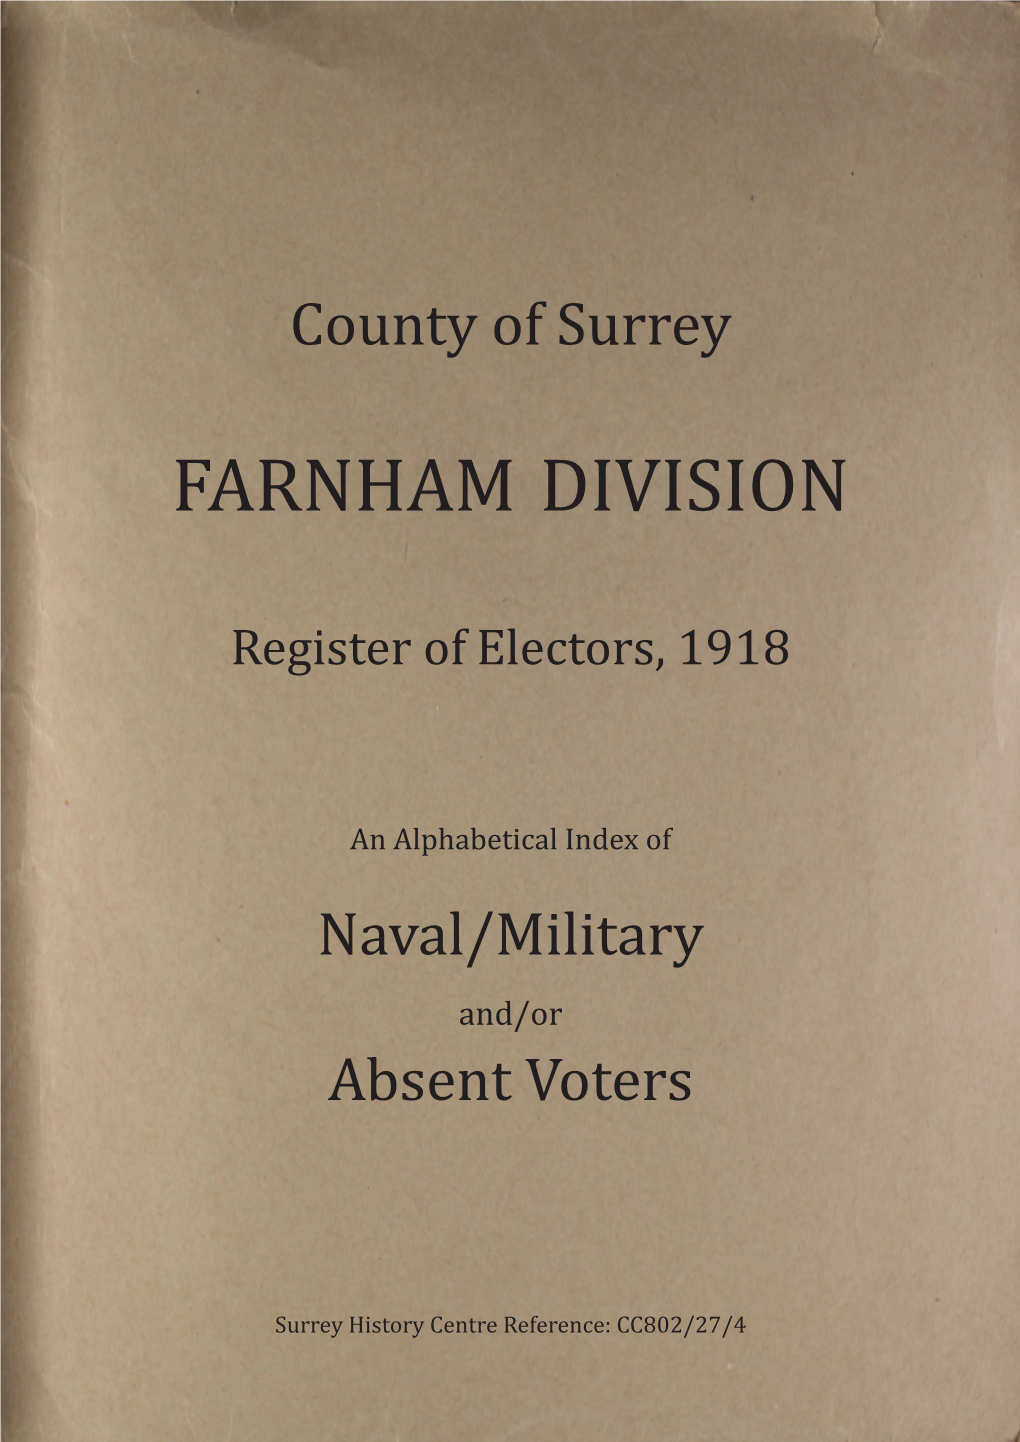 Farnham Division